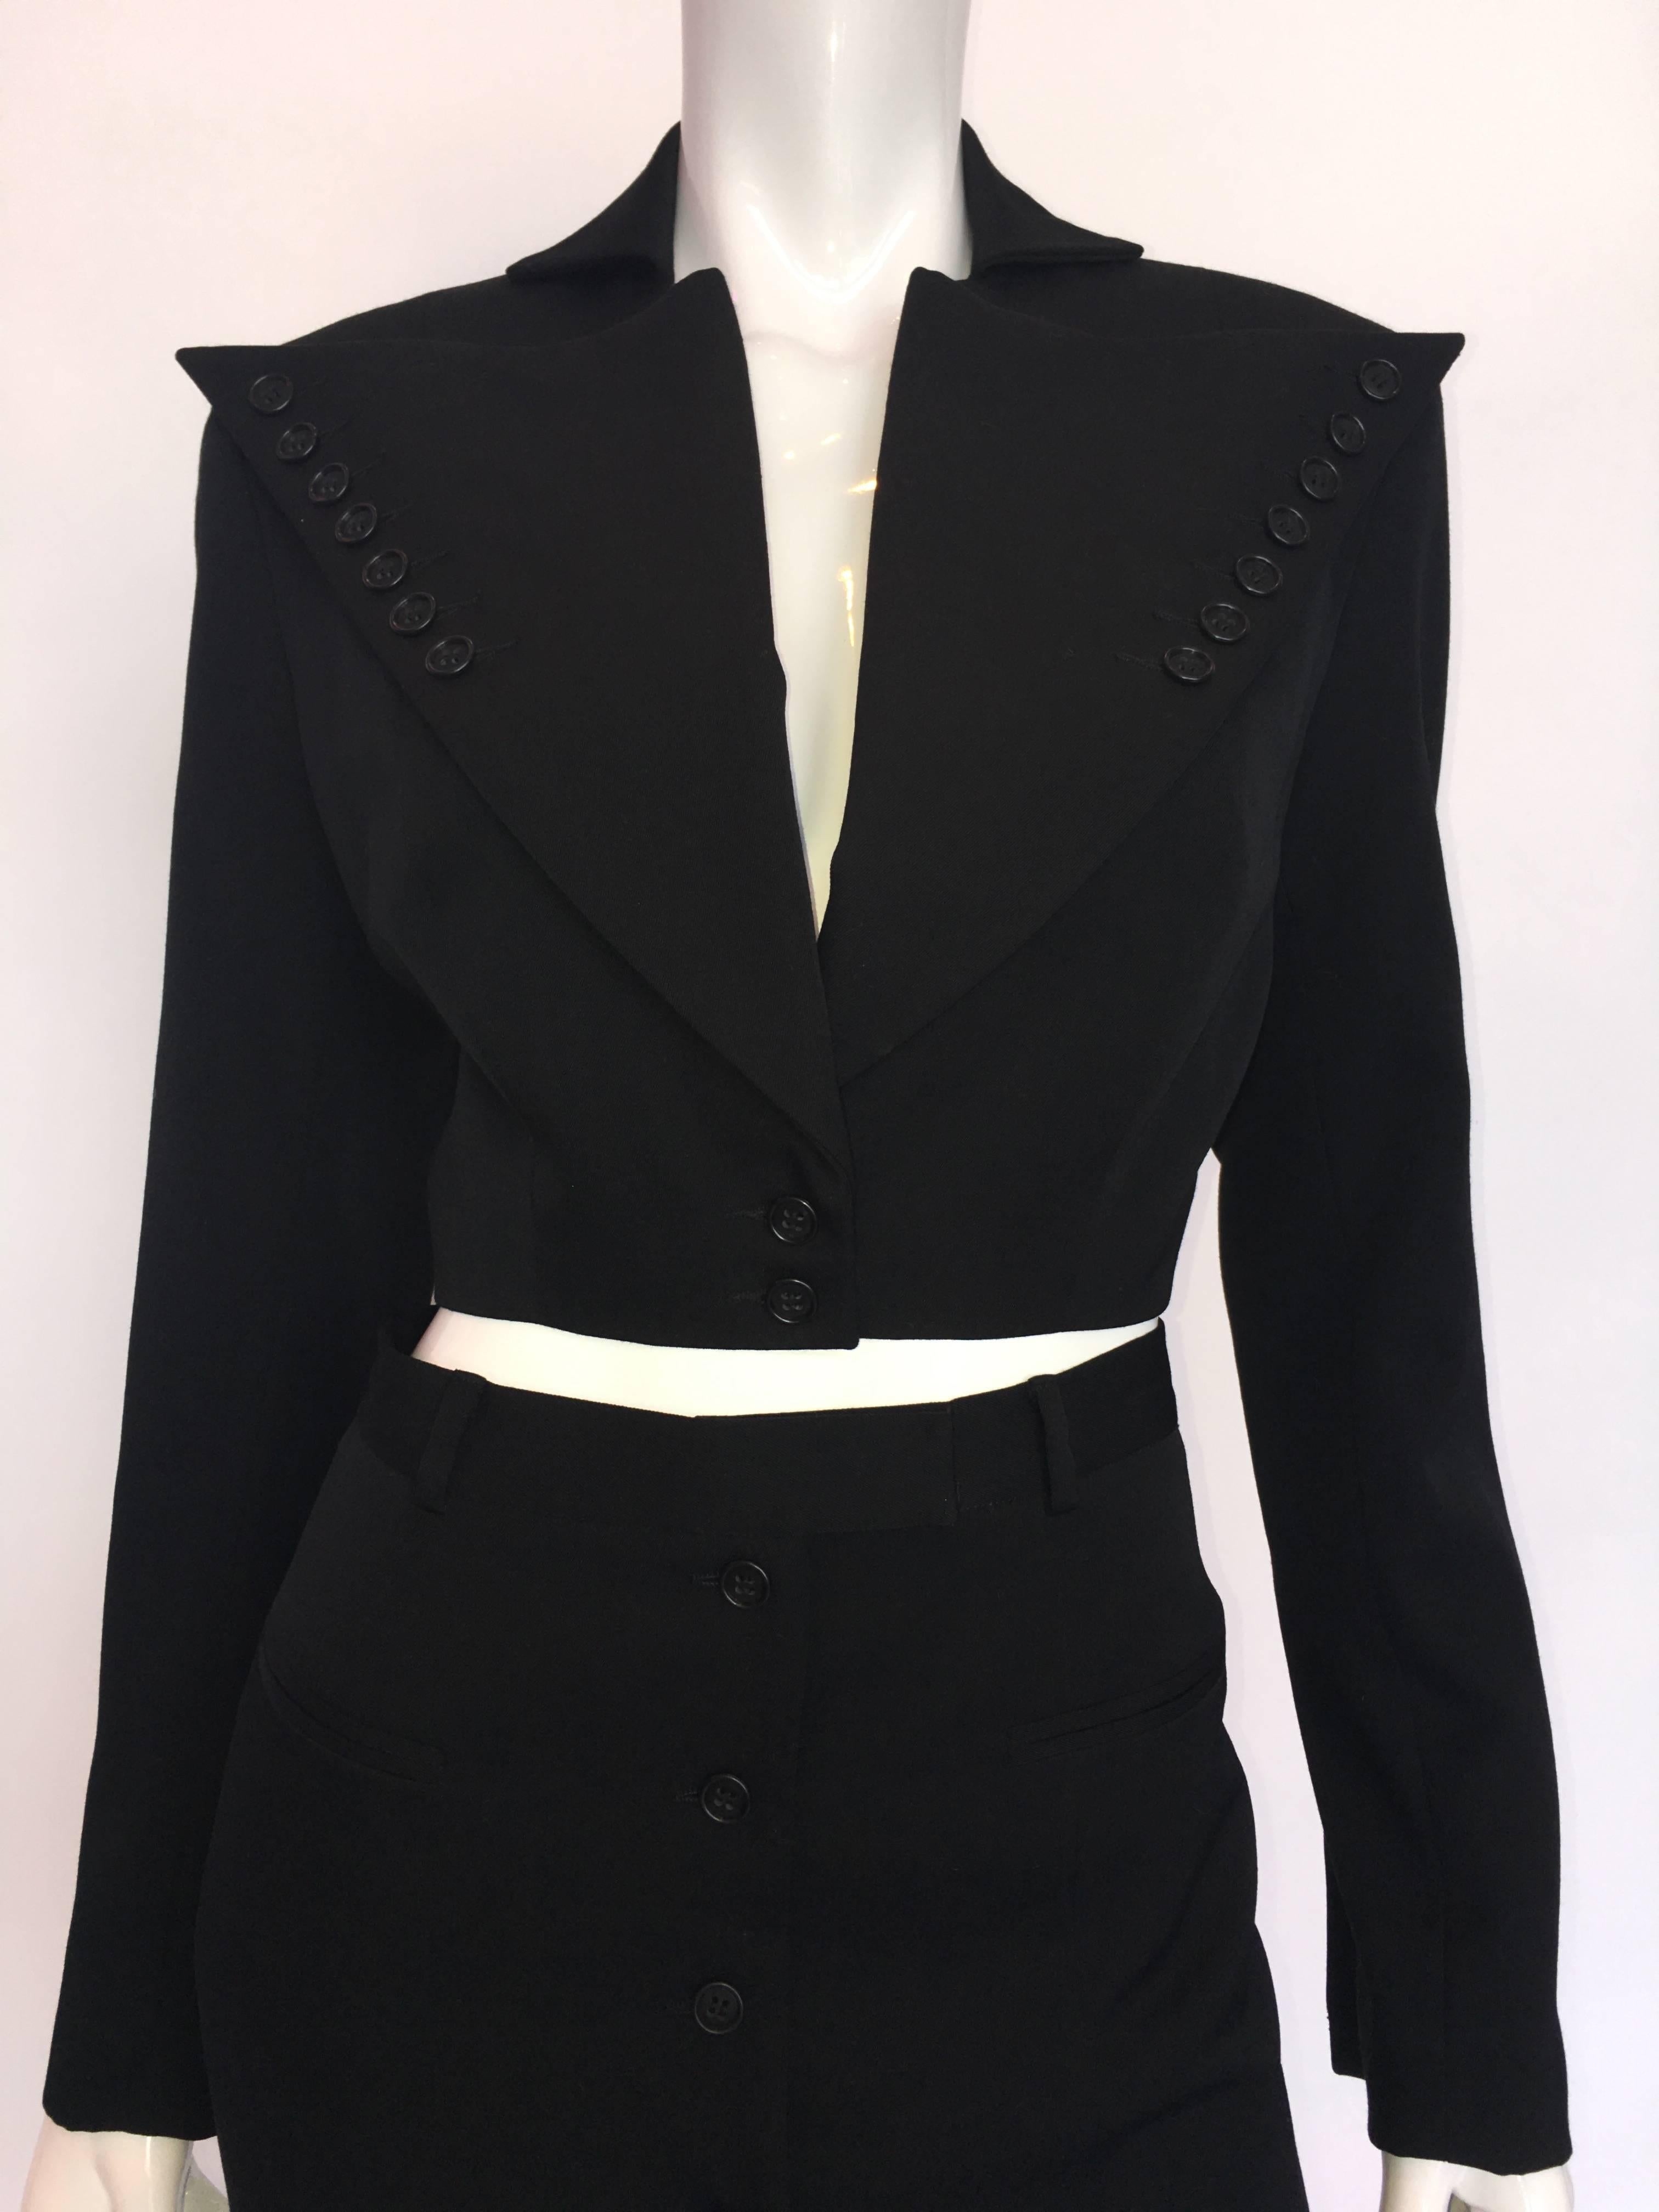 combinaison à mini-jupe en laine noire OMO by Norma Kamali des années 1980 avec détail des boutons

Fabriqué aux États-Unis
Etiquette de taille : 6

Mesures (prises à plat) :
Veste :
Epaules - de la couture à la couture : 17